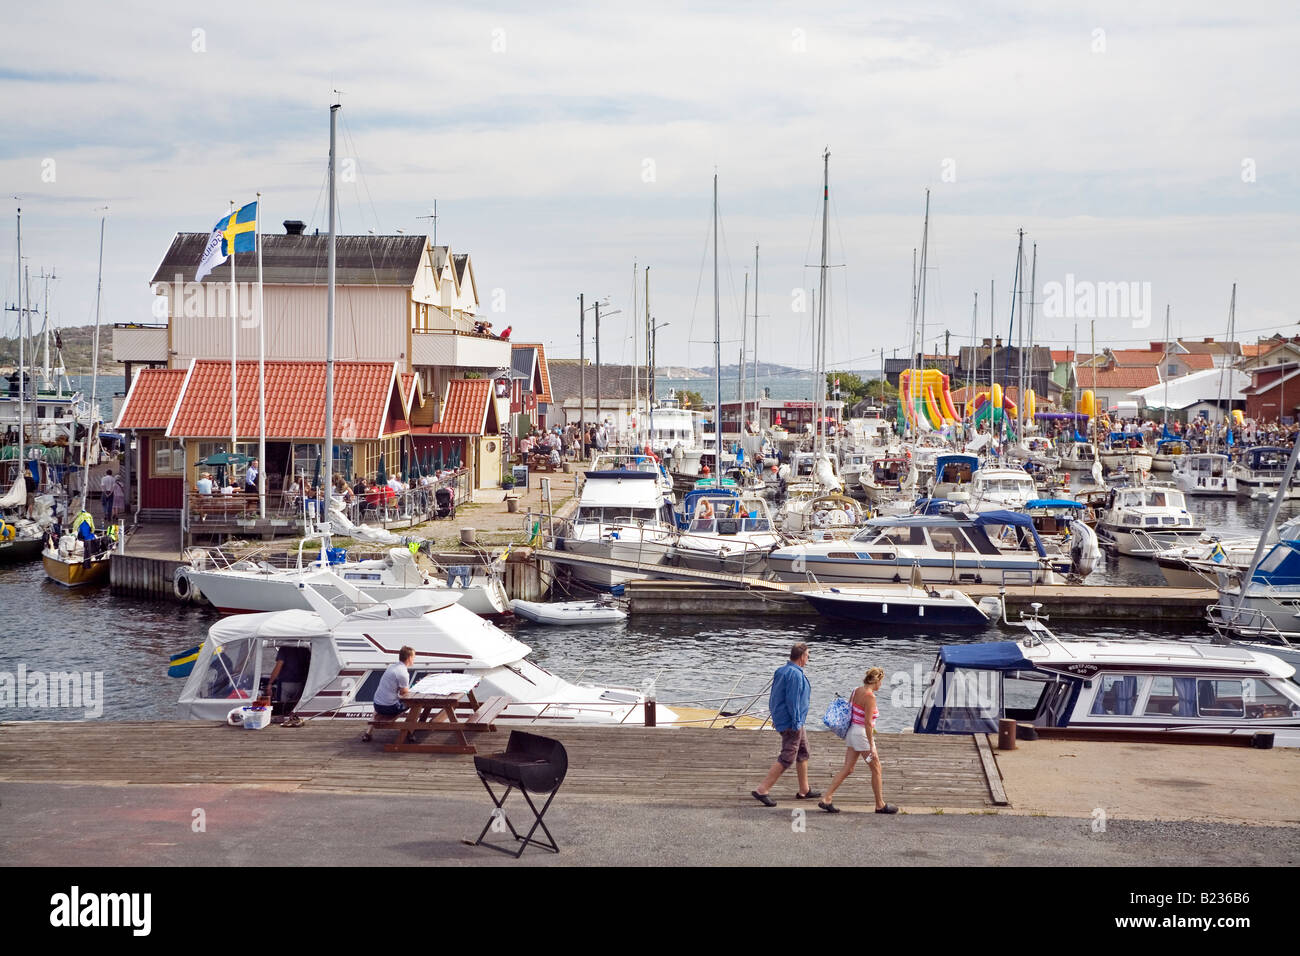 Una parte del porto Knippla e isola nella parte settentrionale dell'arcipelago di Gothenburg in Svezia Foto Stock